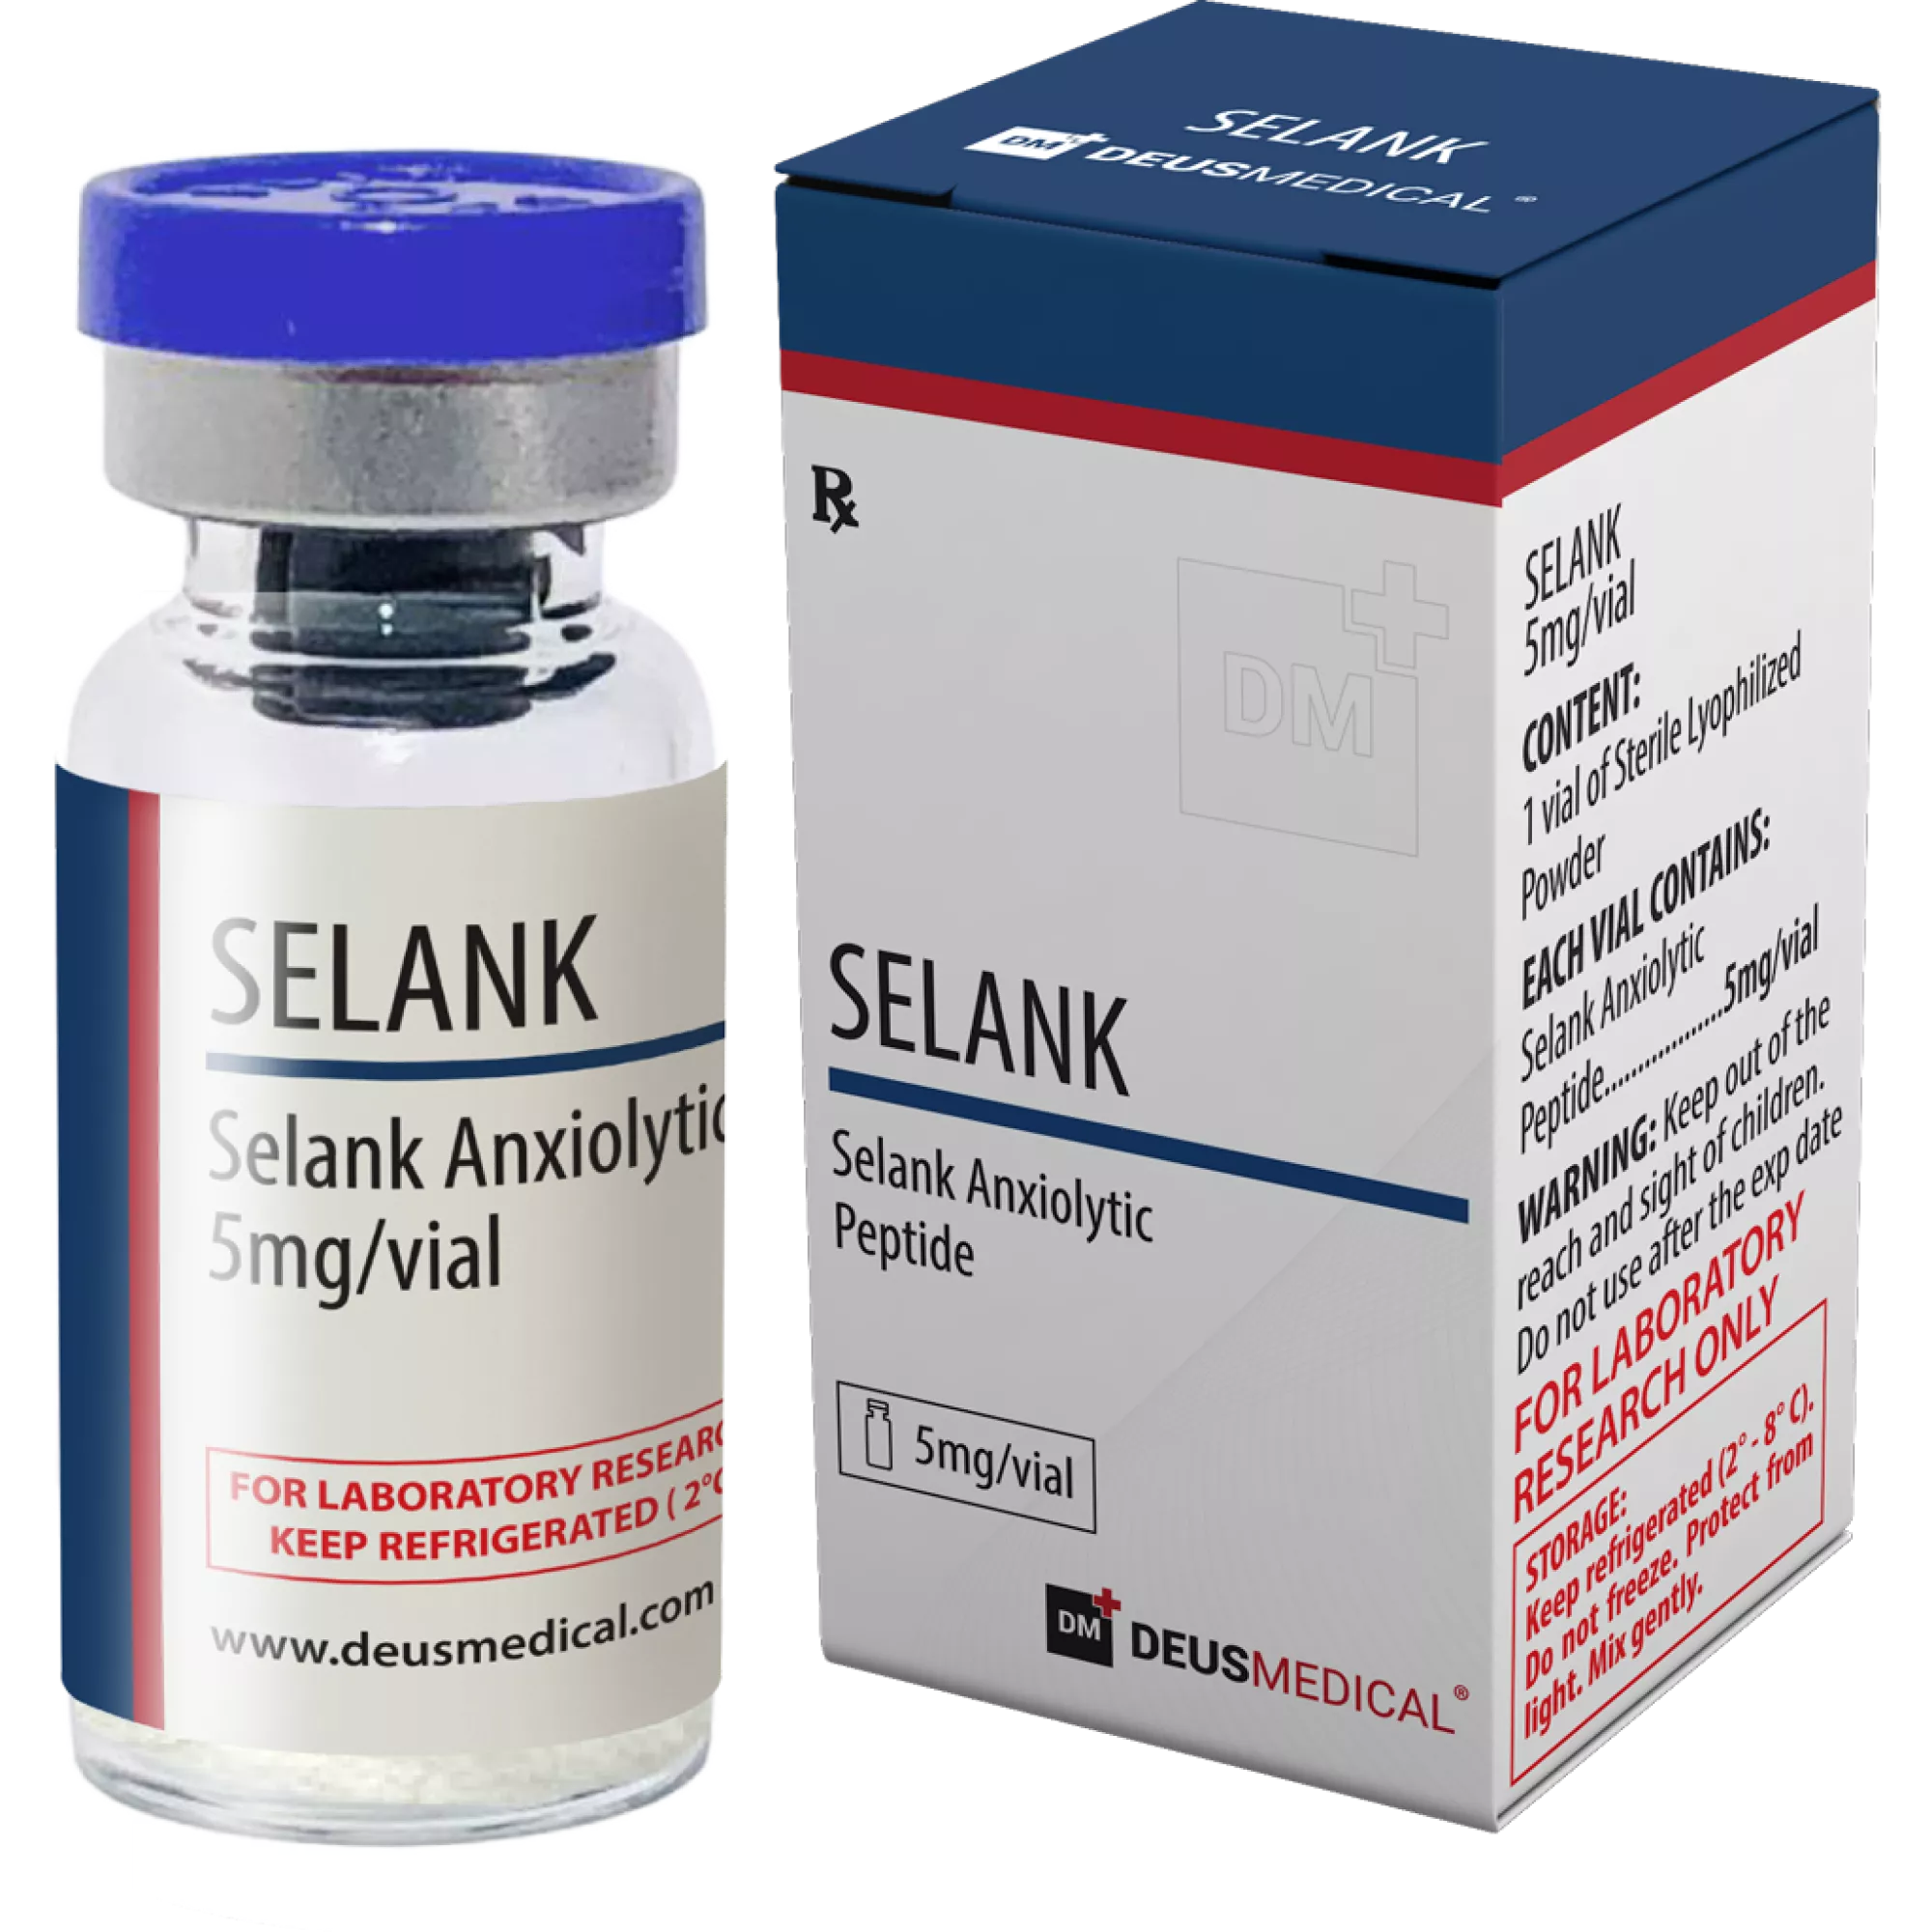 SELANK (Selank Anxiolytic Peptide), Deus Medical, Köp steroider online - www.deuspower.shop